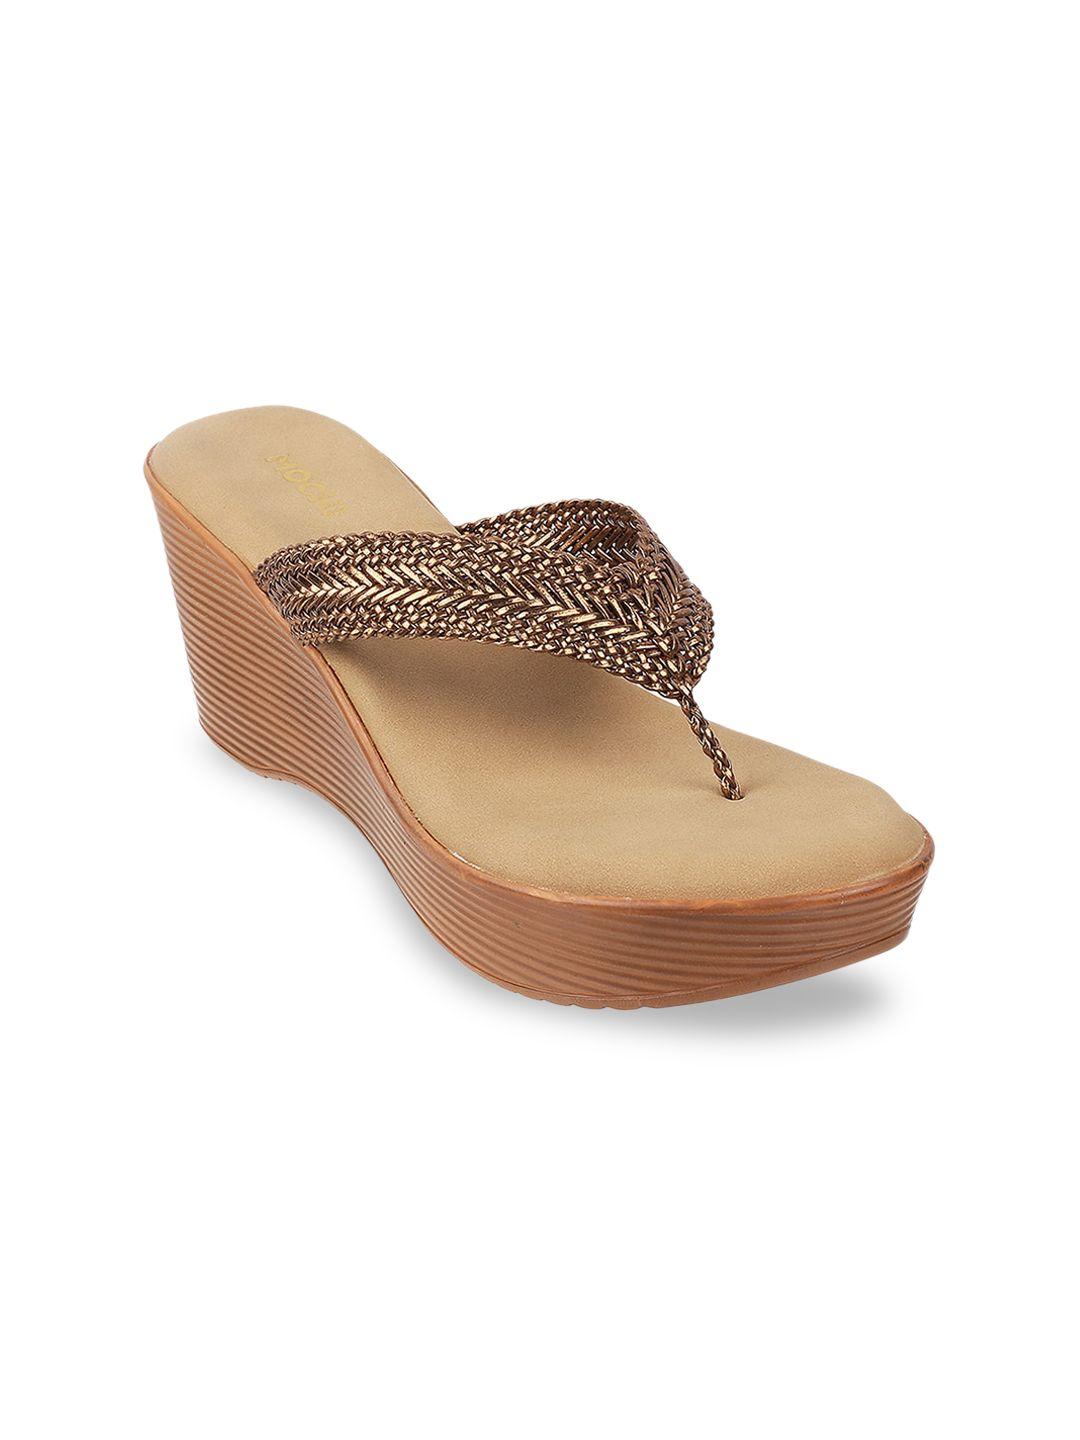 mochi open-toe ethnic wedge sandals heels